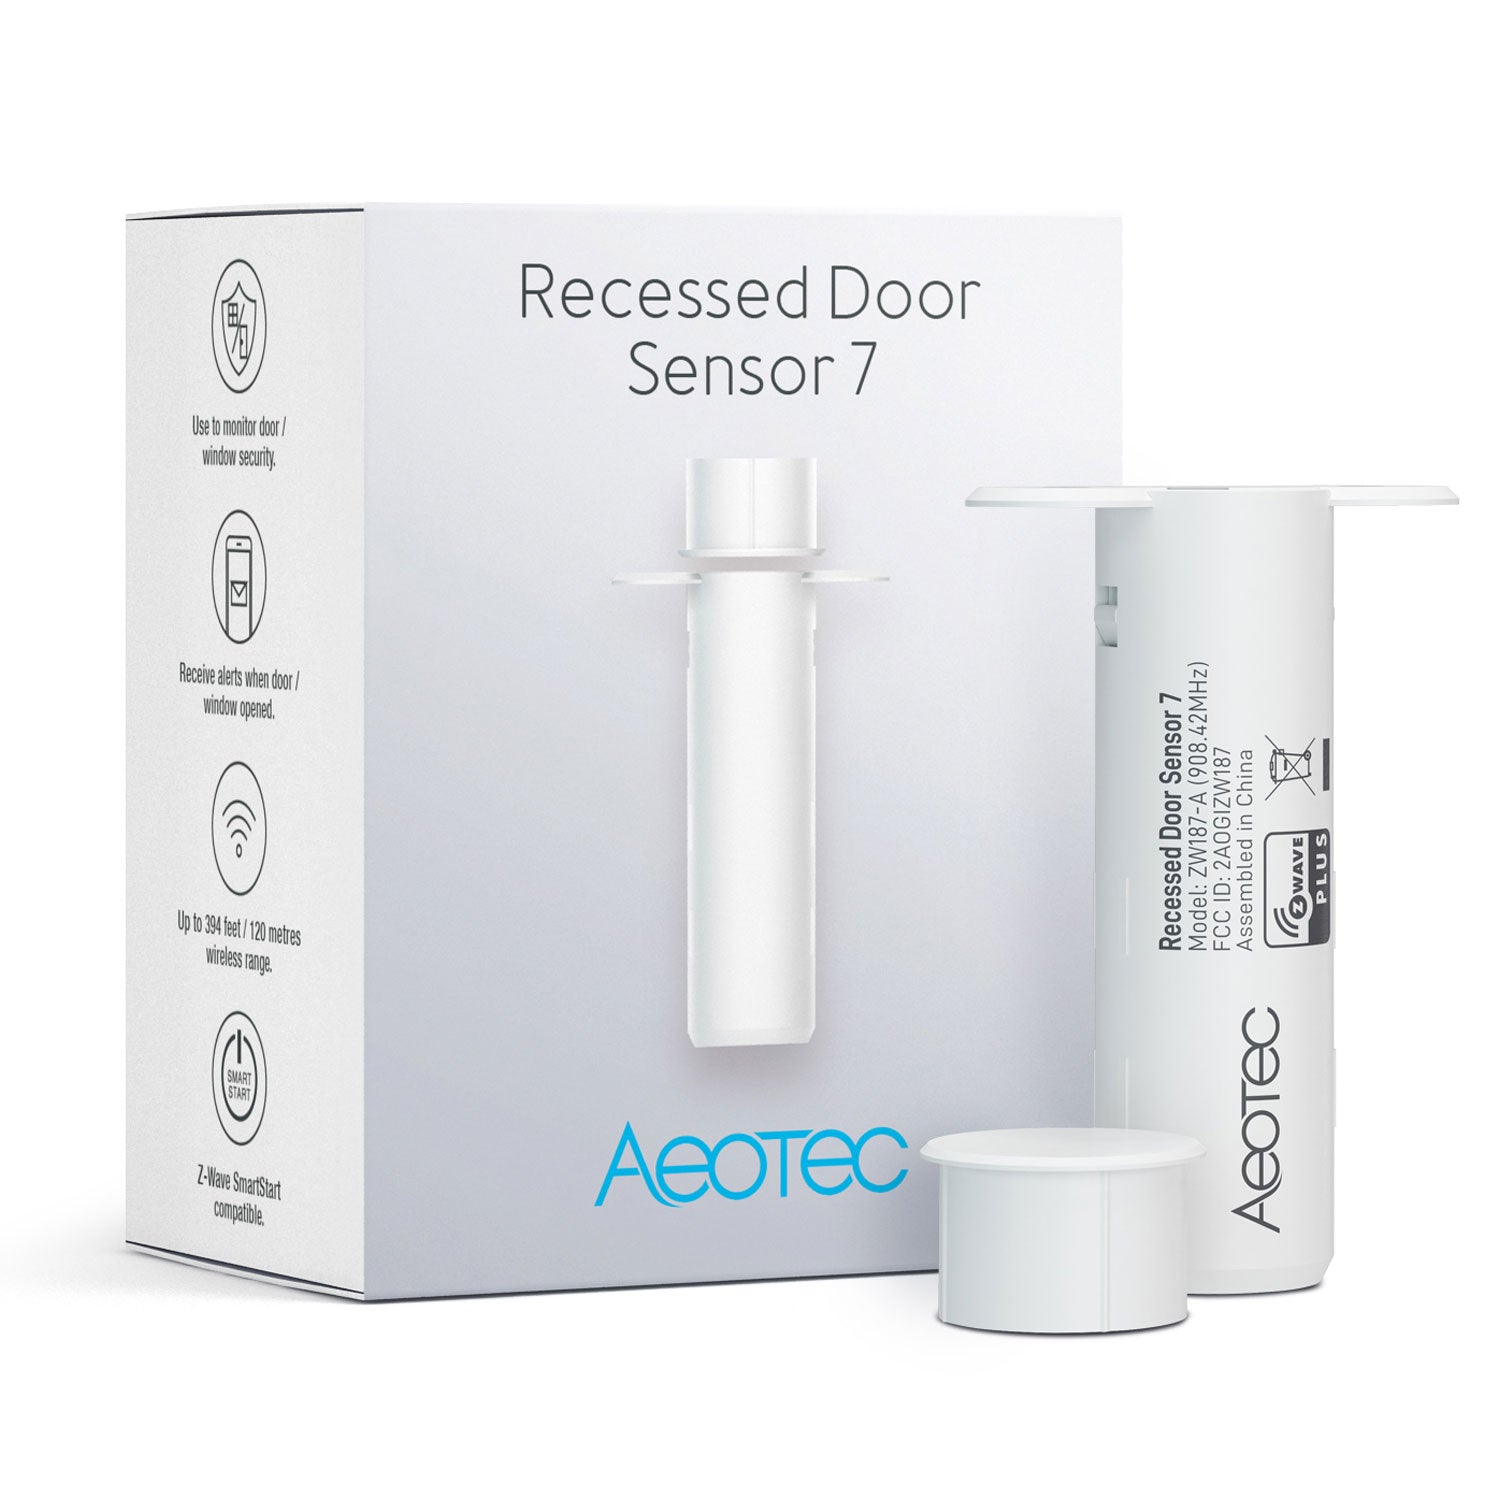 Aeotec Recessed Door Sensor Verpackung